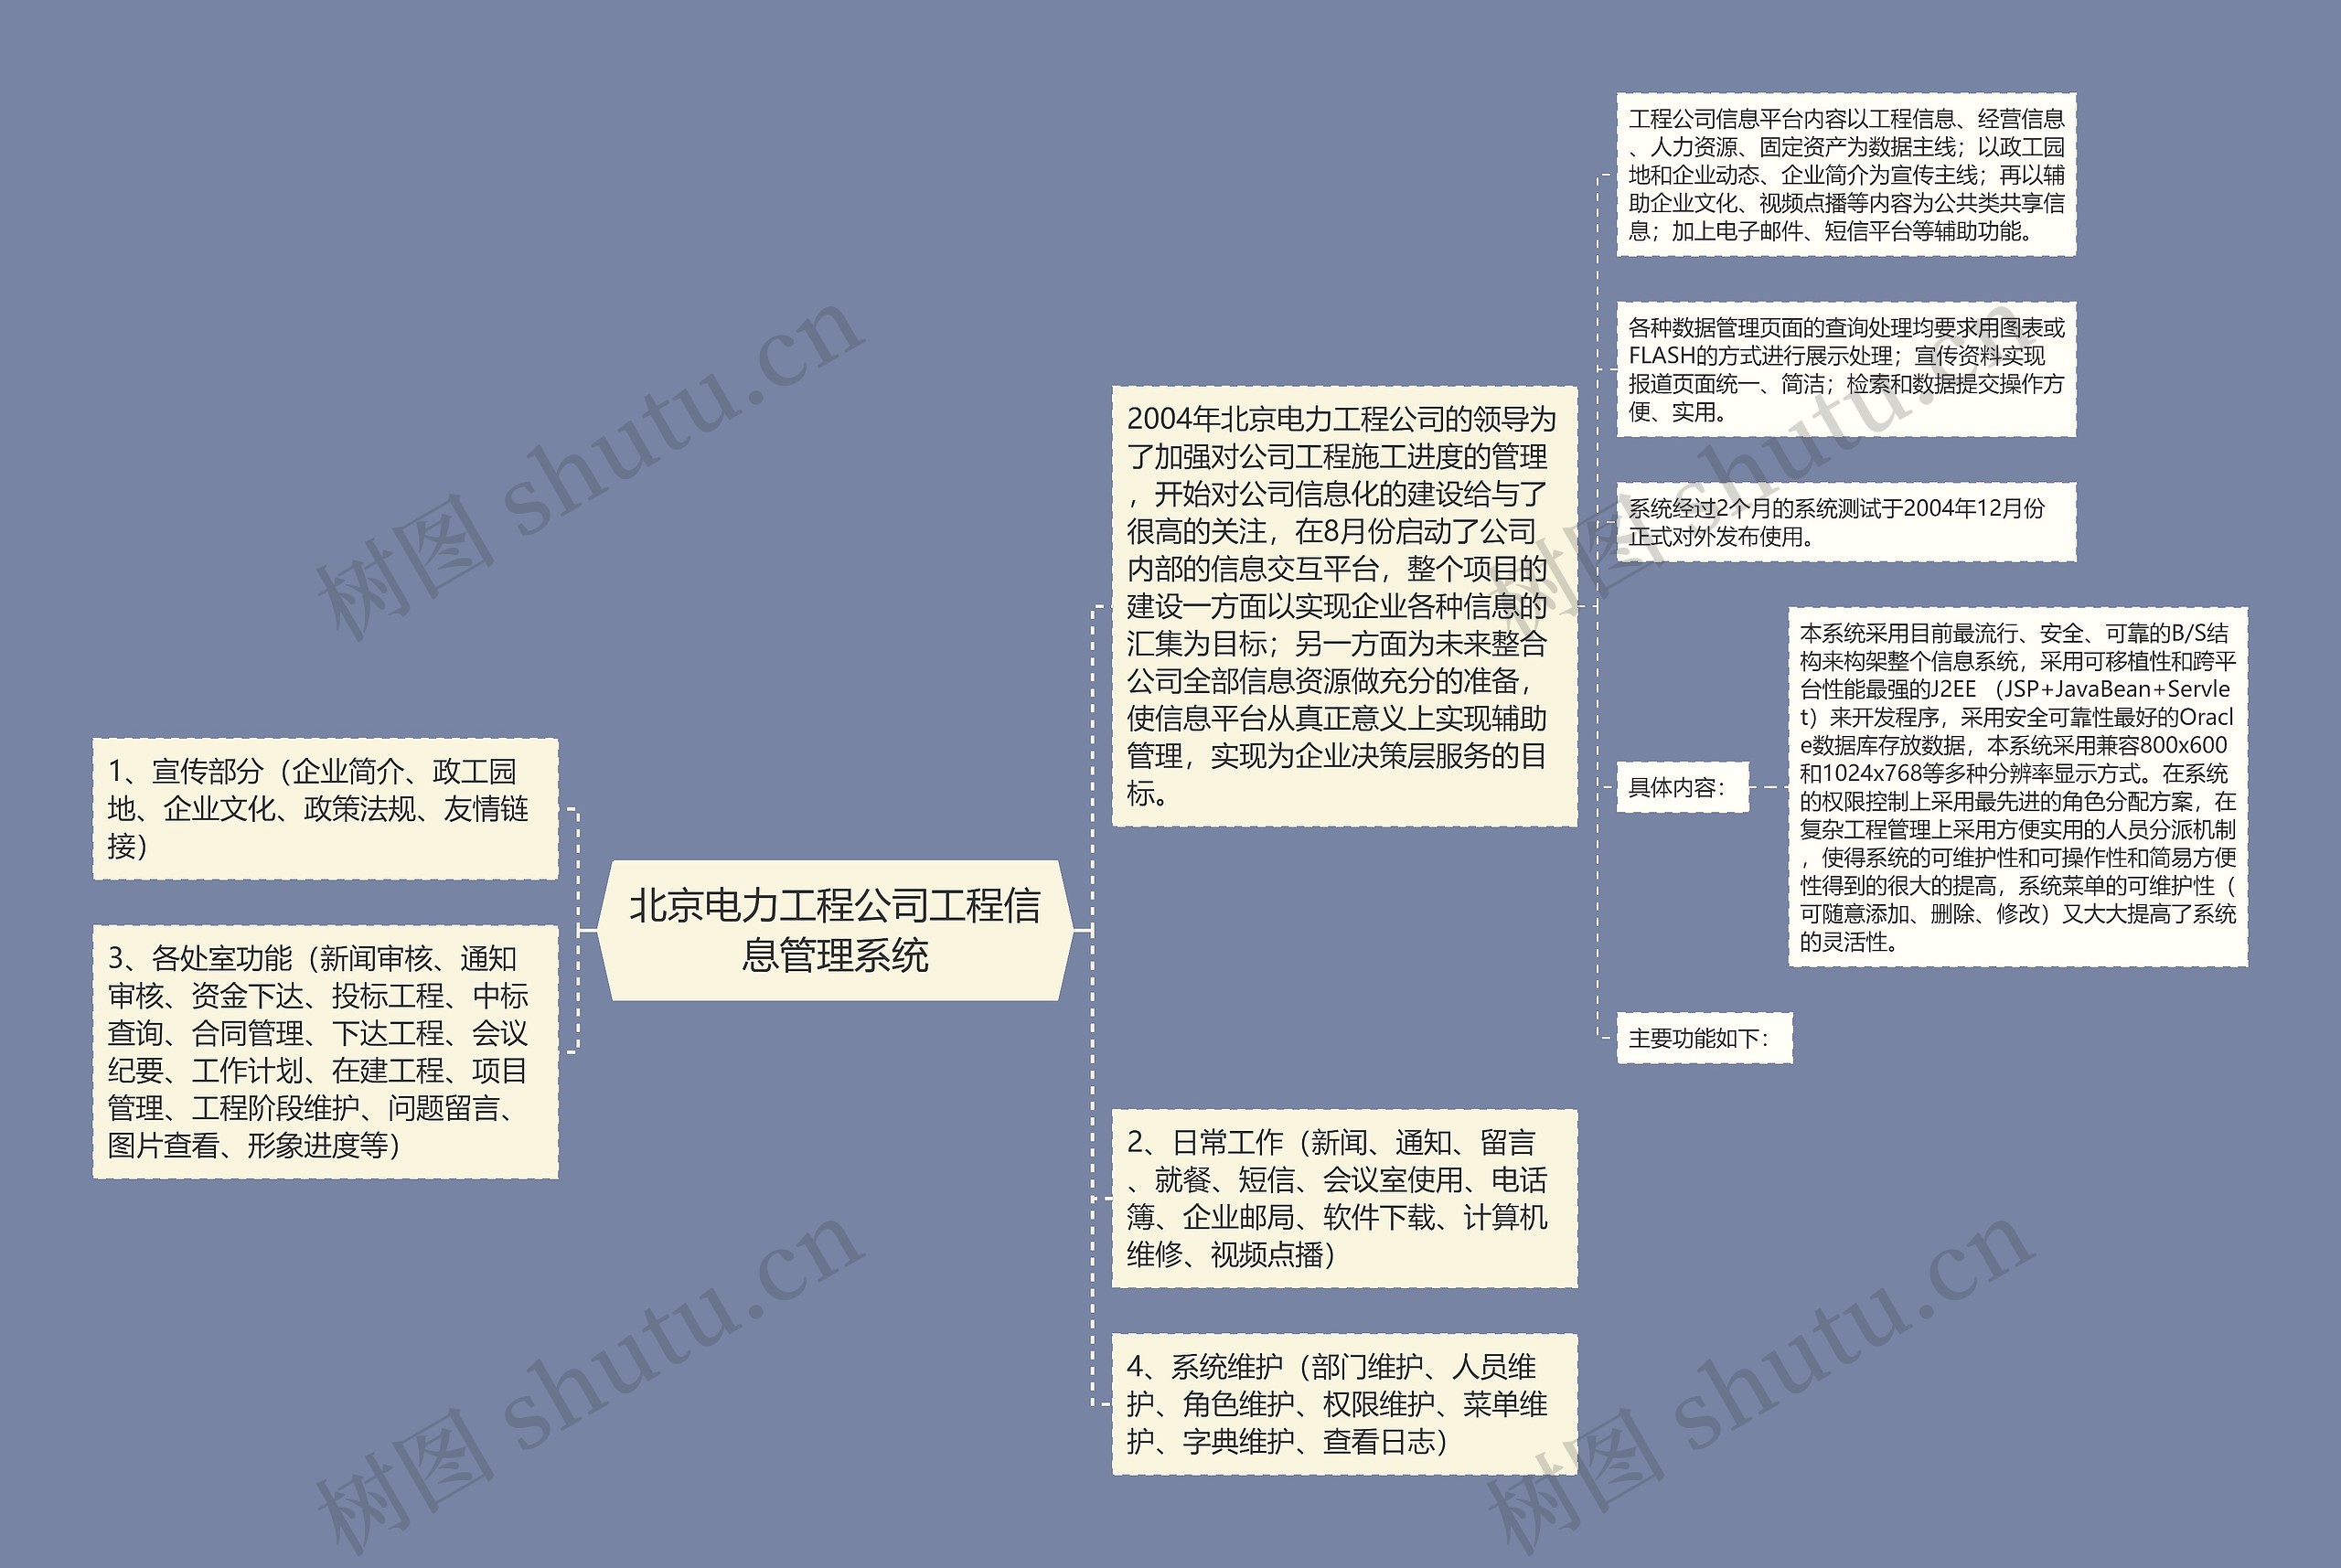 北京电力工程公司工程信息管理系统